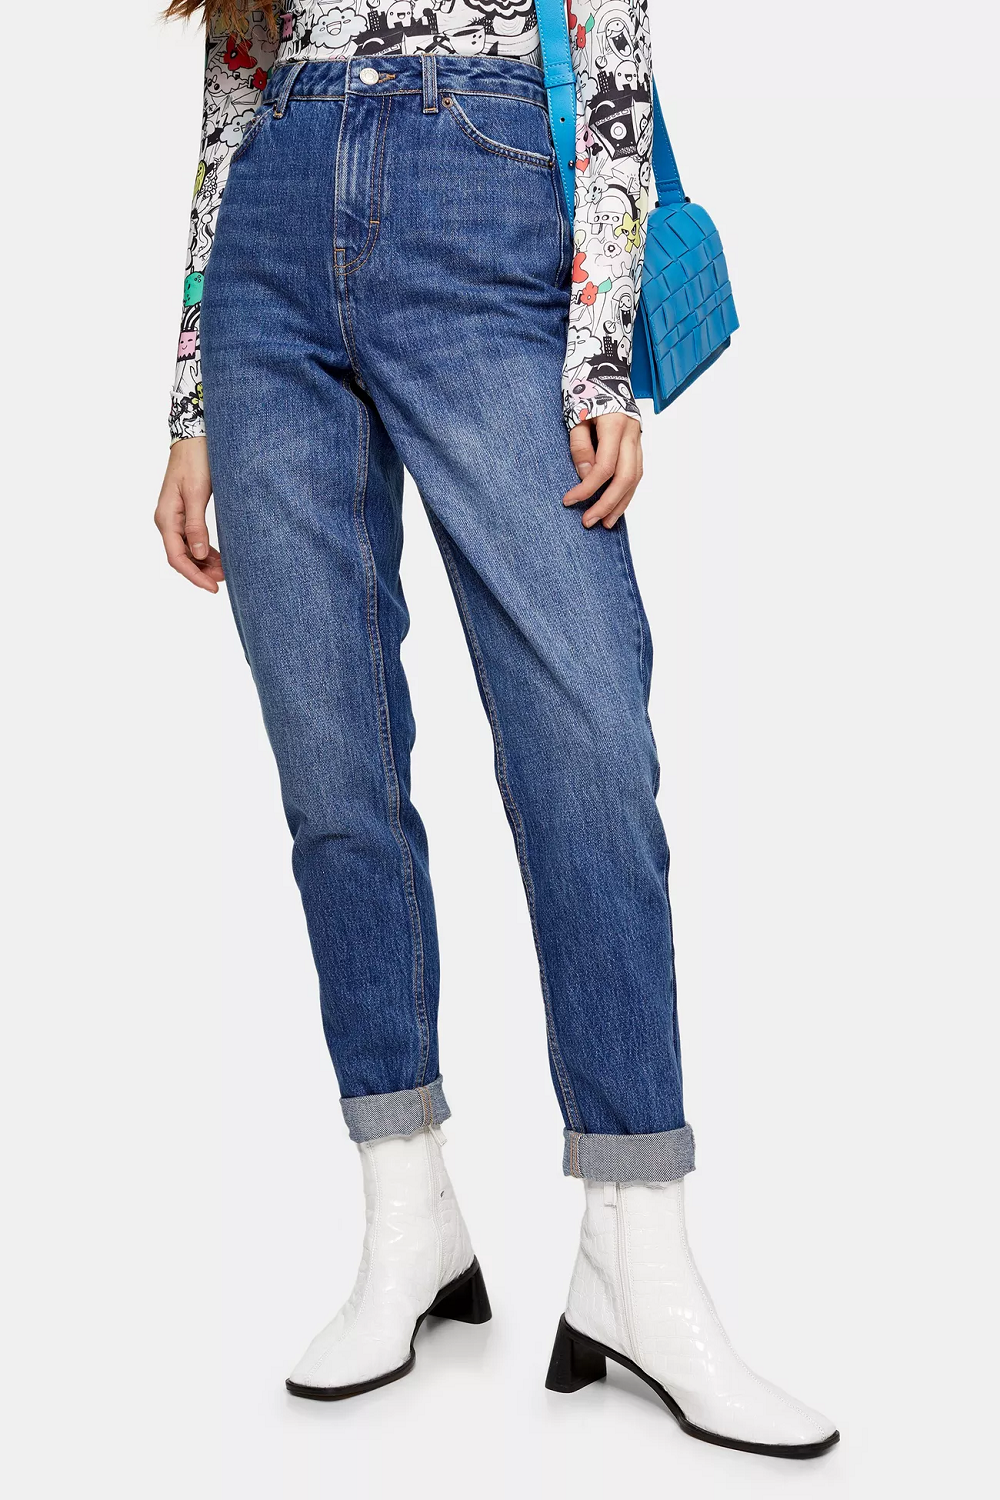 7 savršenih 'mom jeans' traperice Topshop jesen zima 2020.